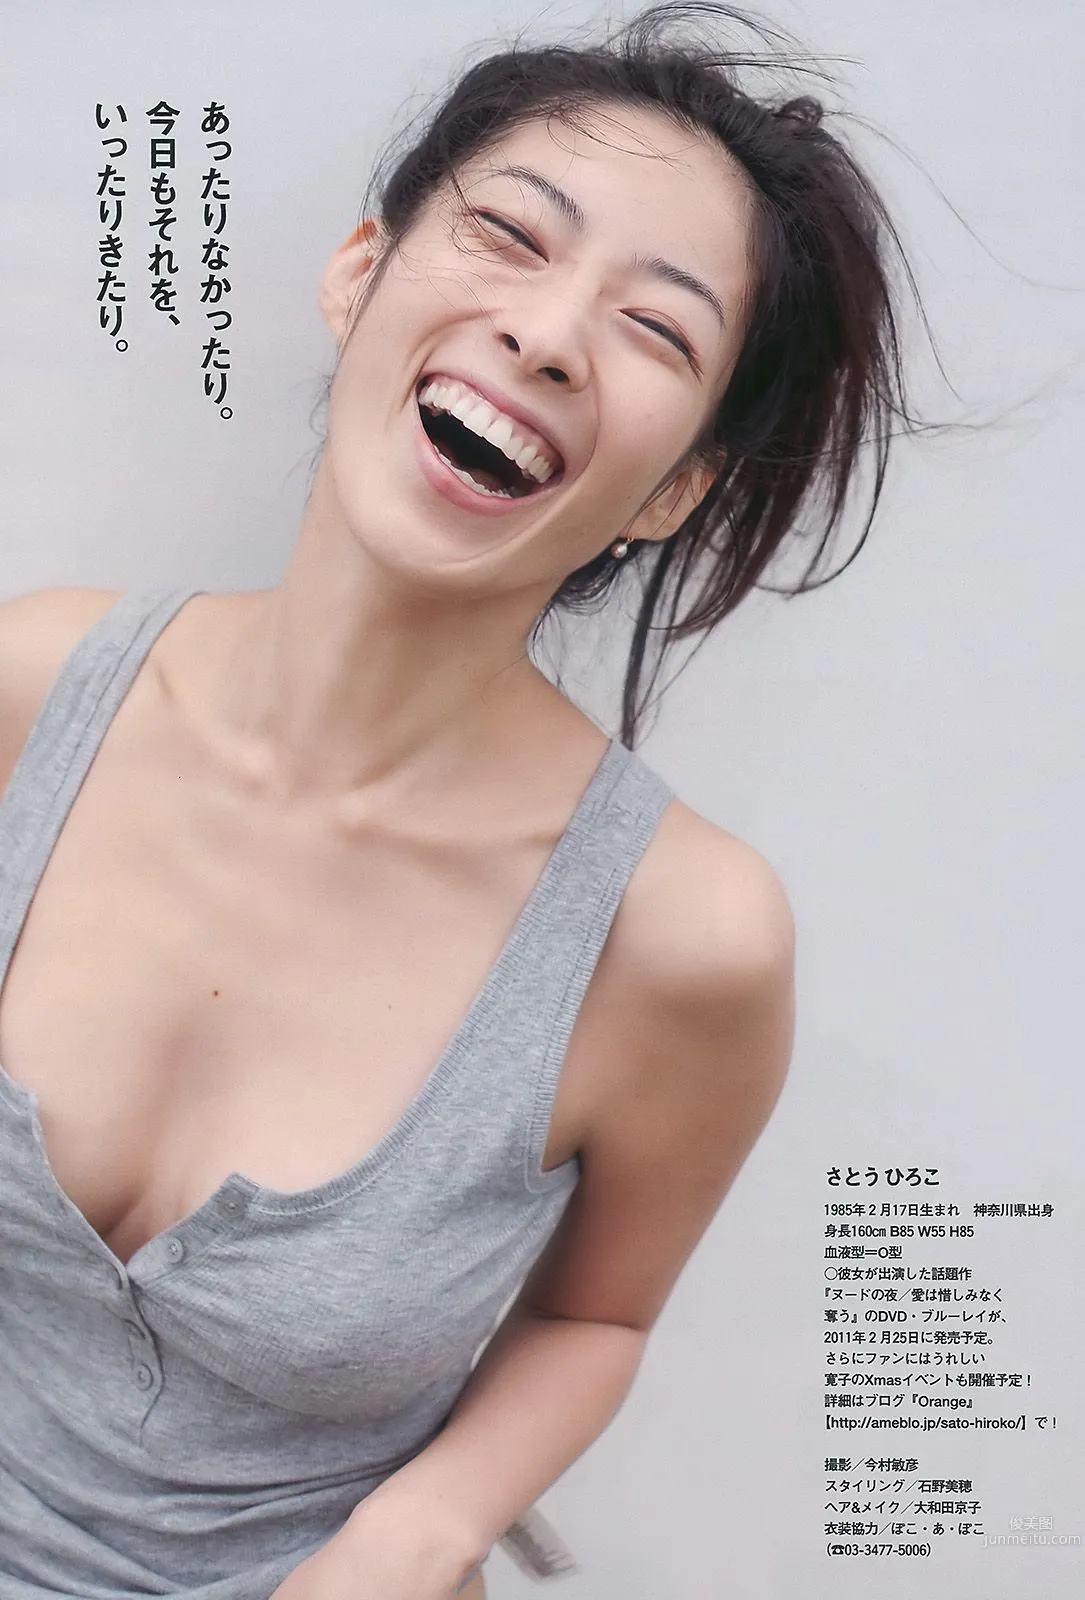 平野綾 AKB48 佐藤寛子 西田麻衣 森崎友紀 Agnes Lum [Weekly Playboy] 2010年No.51 写真杂志27